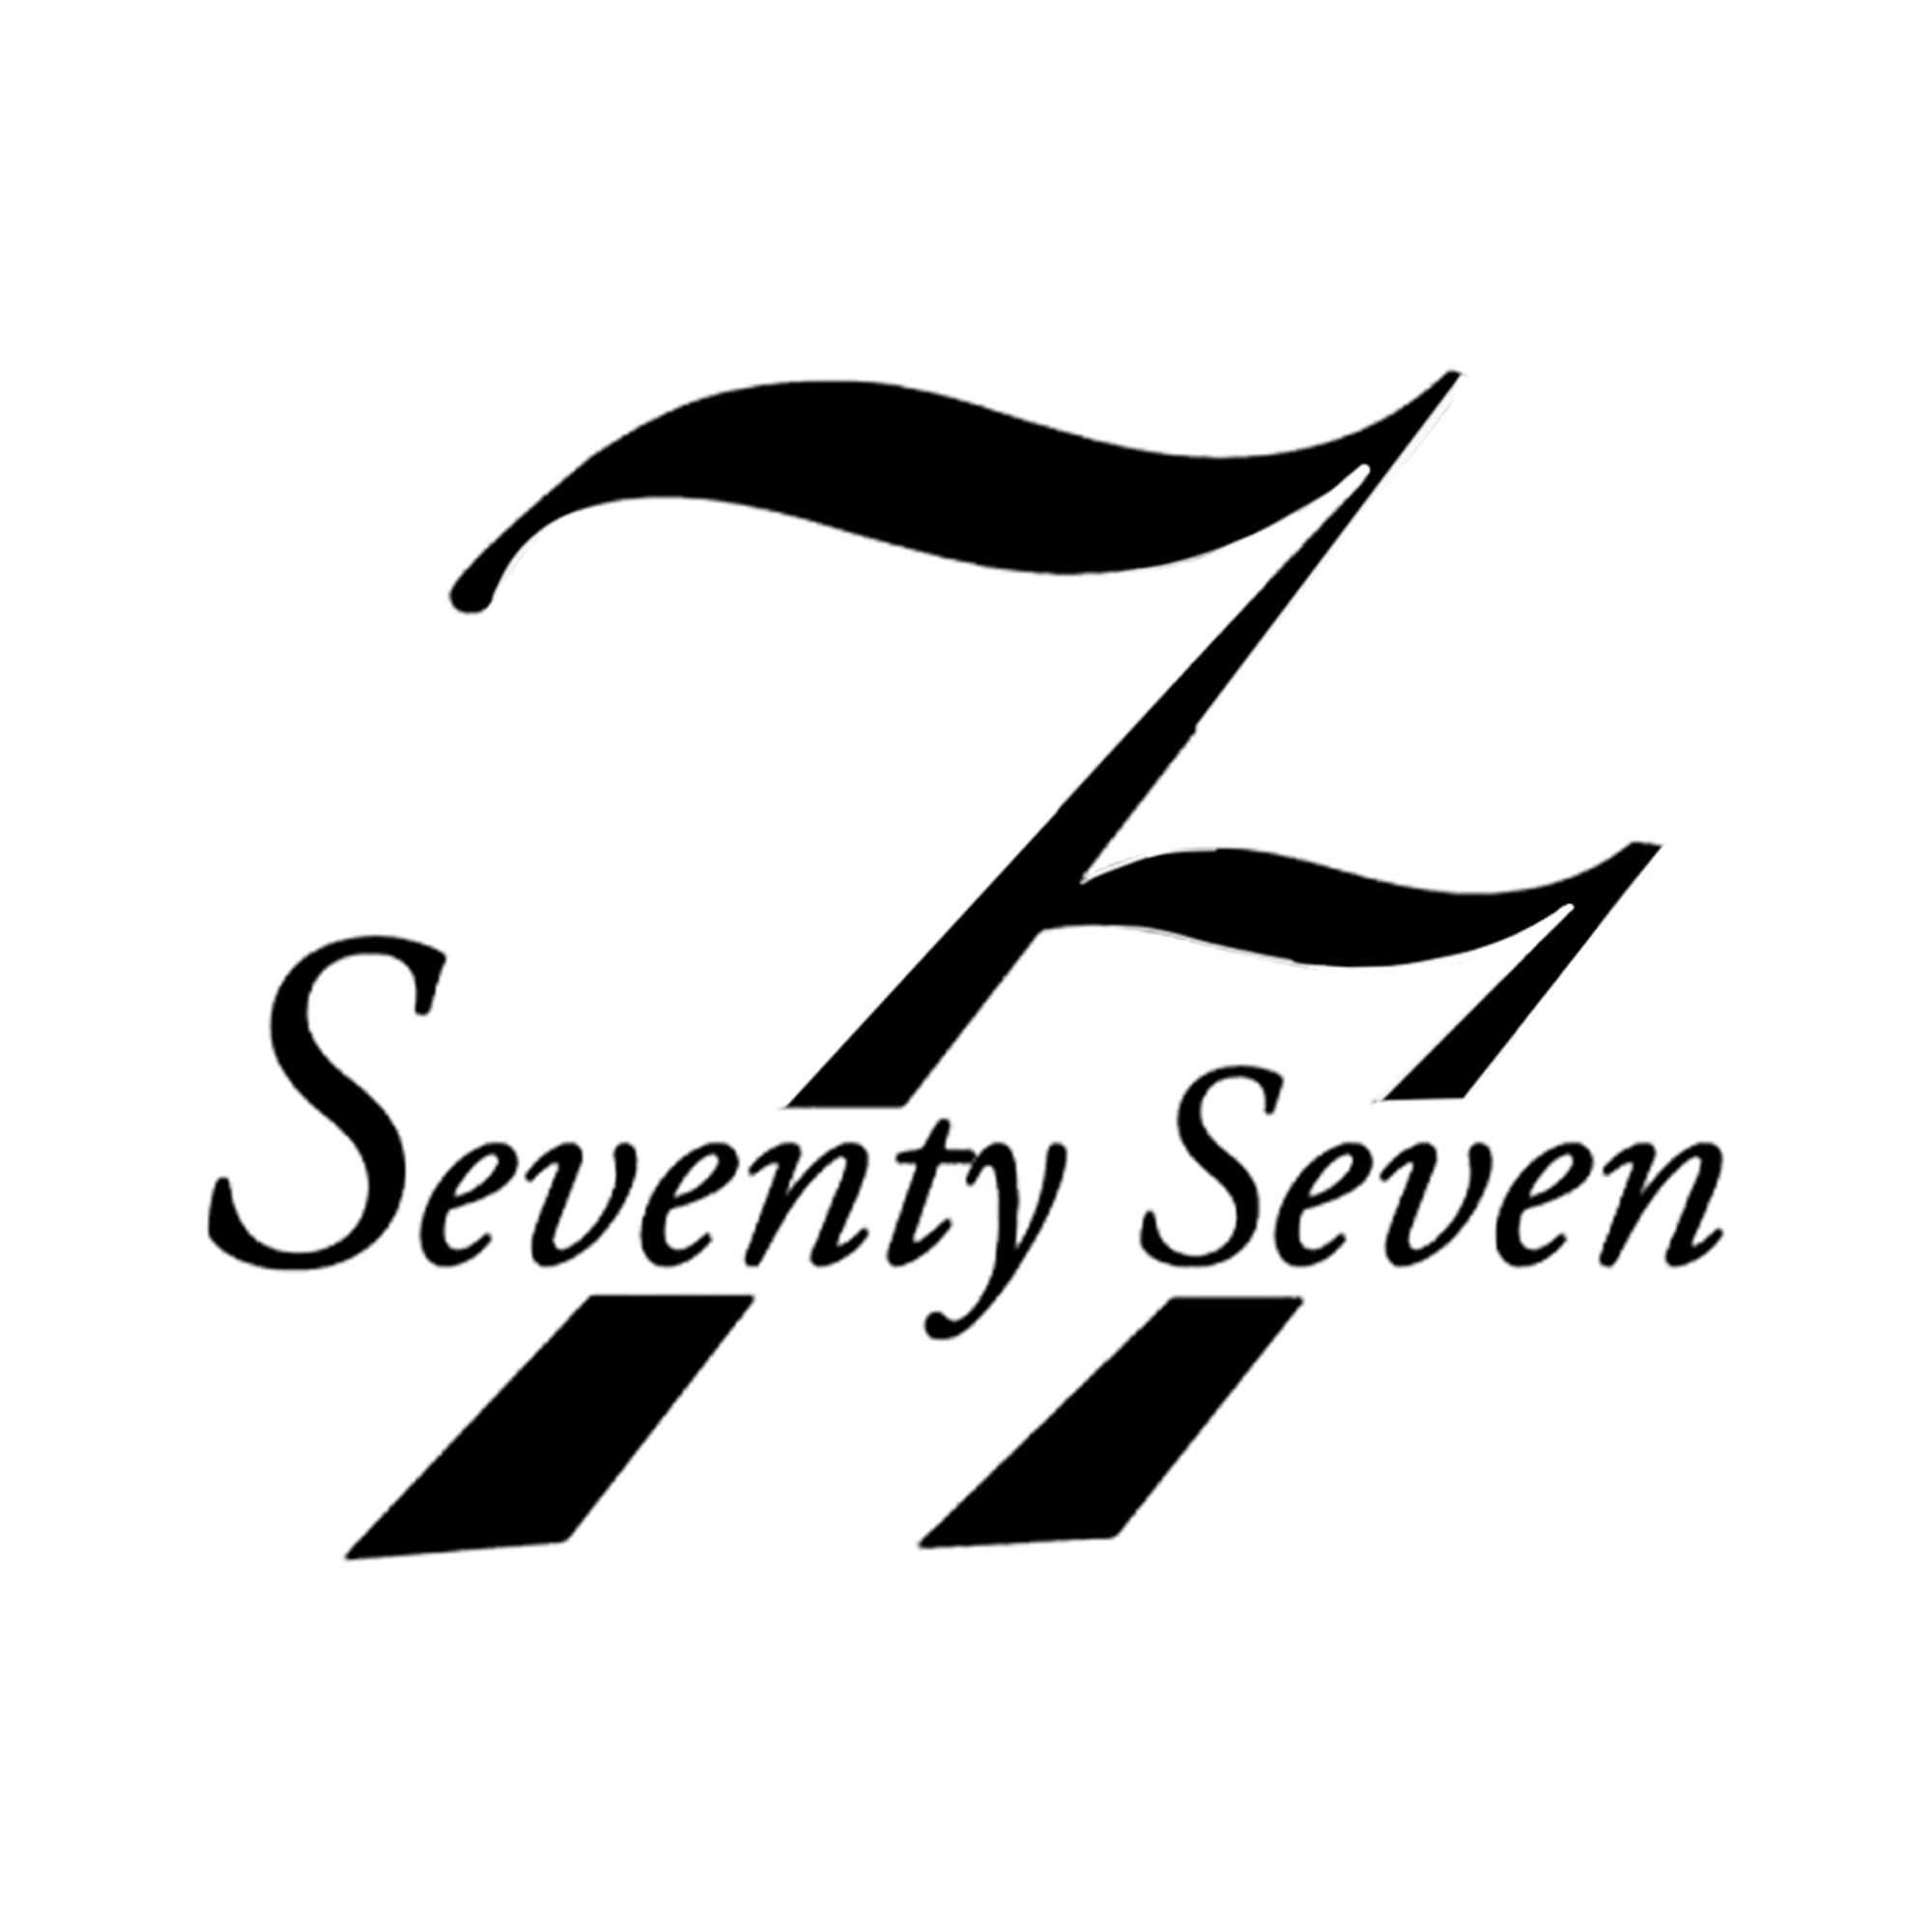 銀座のクラブ「77-セブンティセブン」のロゴ